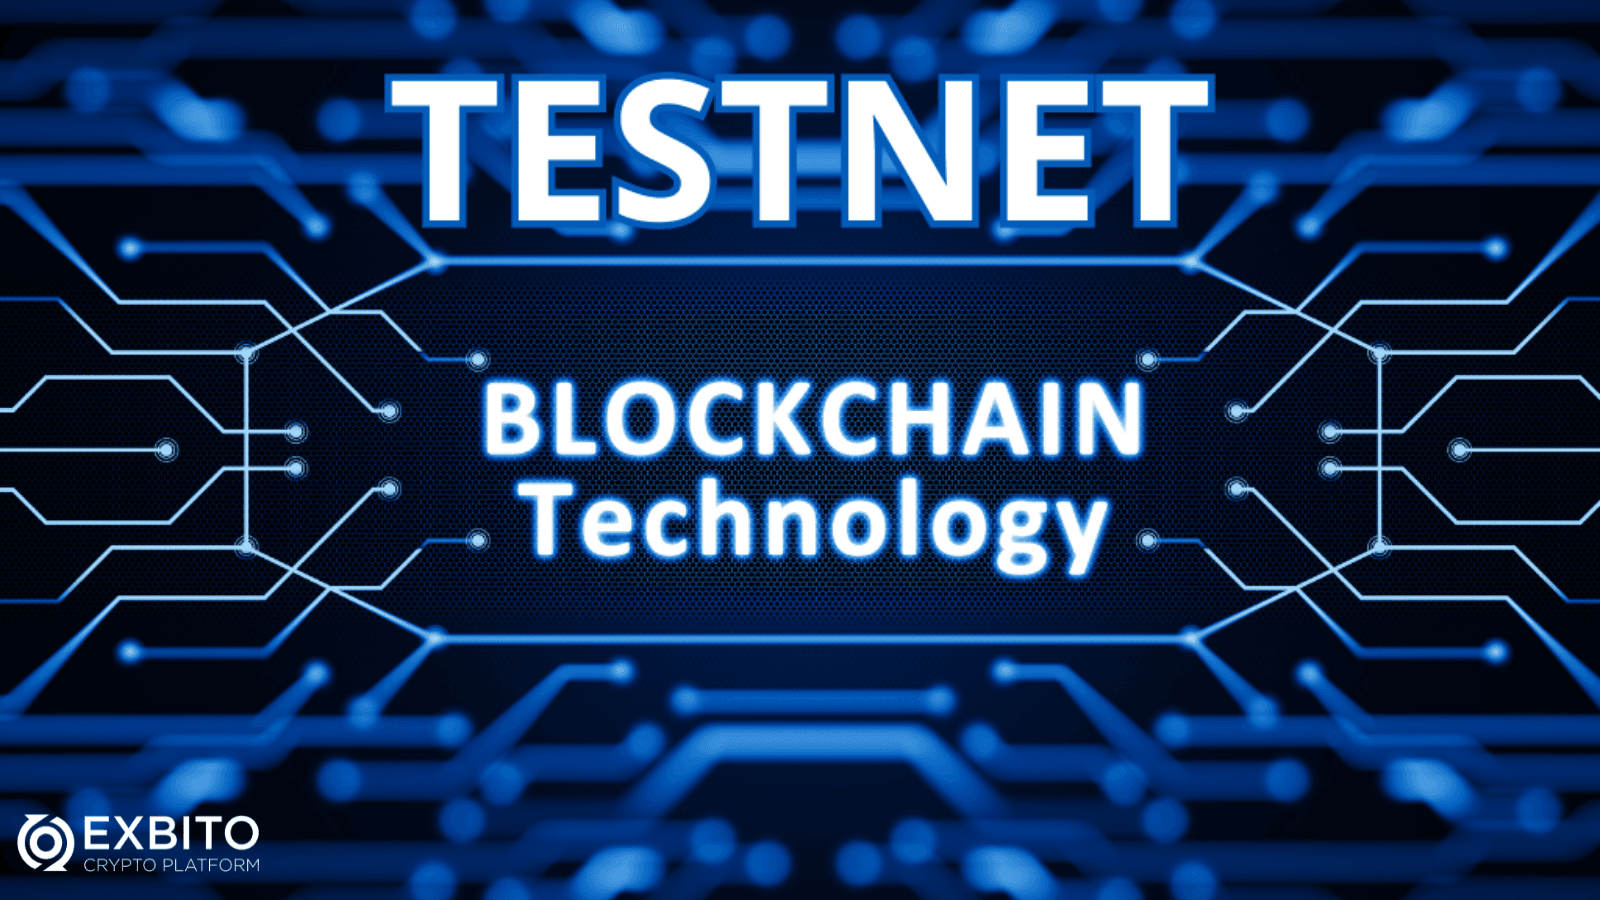 تست نت (Testnet) چیست؟